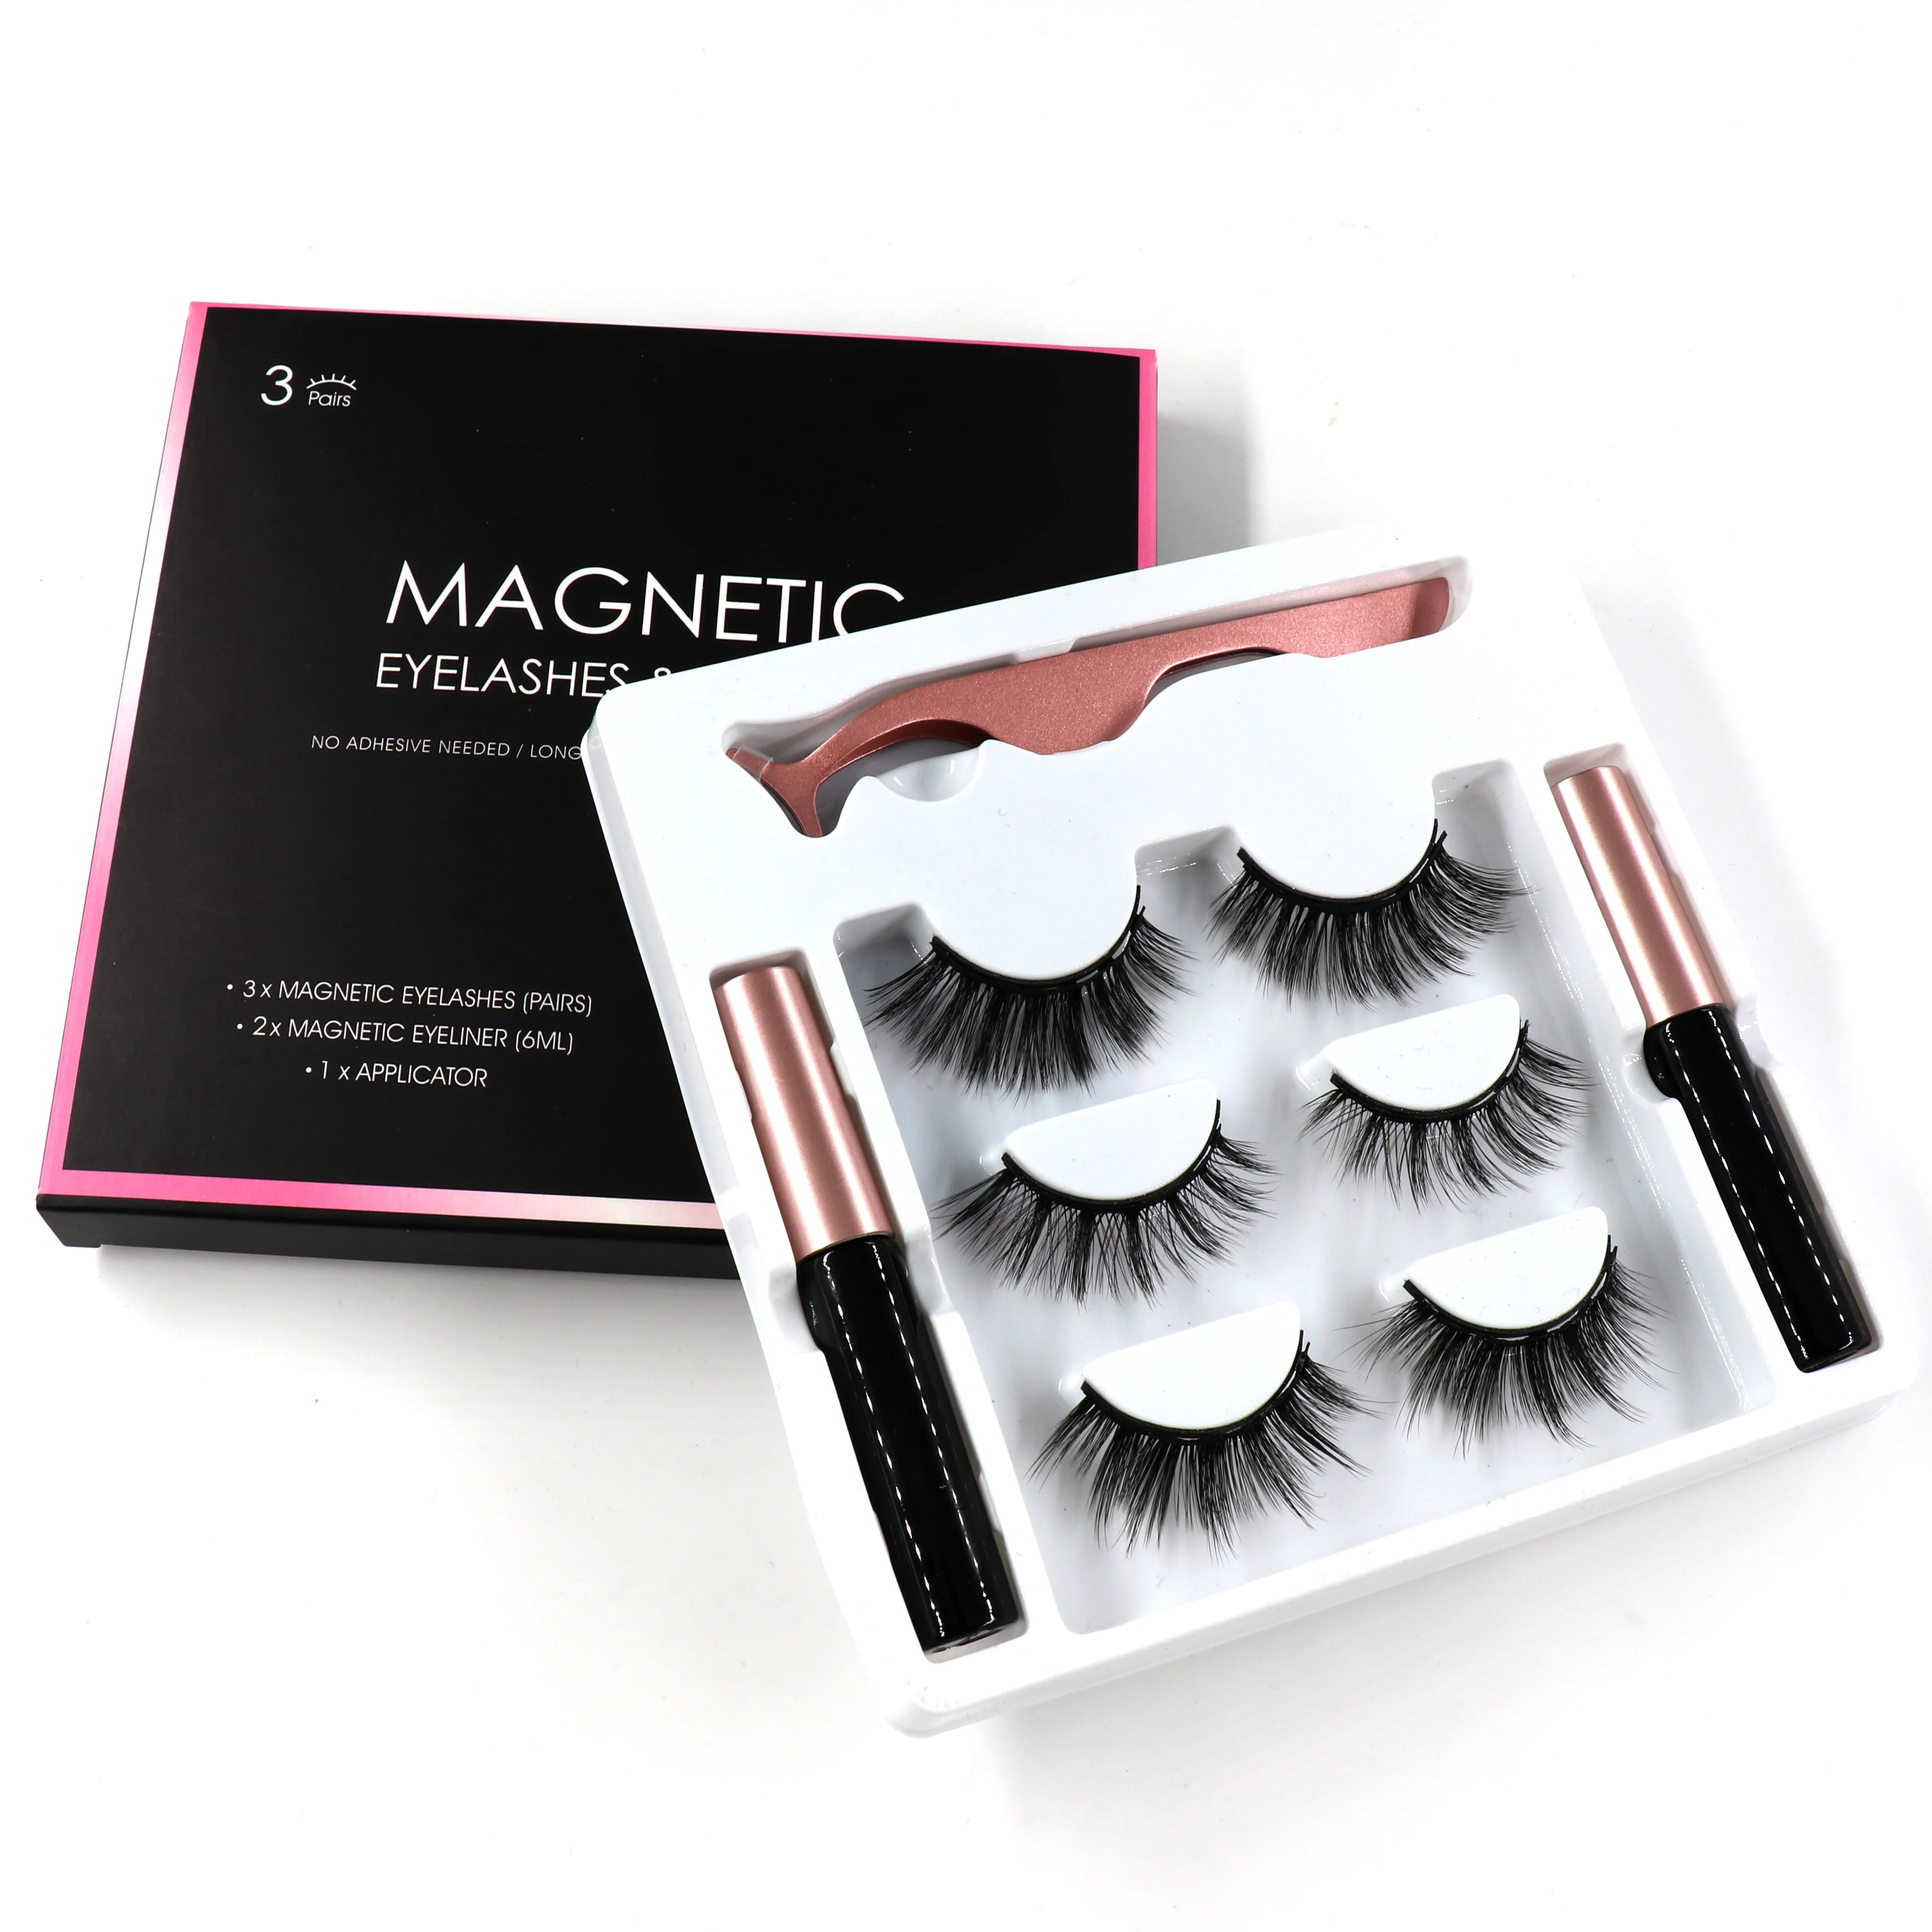 

Natural False 5 Magnets Eyelashes Lashes With Magnetic Liquid Eyeliner Private Label Magnetic False Eyelashes Tweezer Set